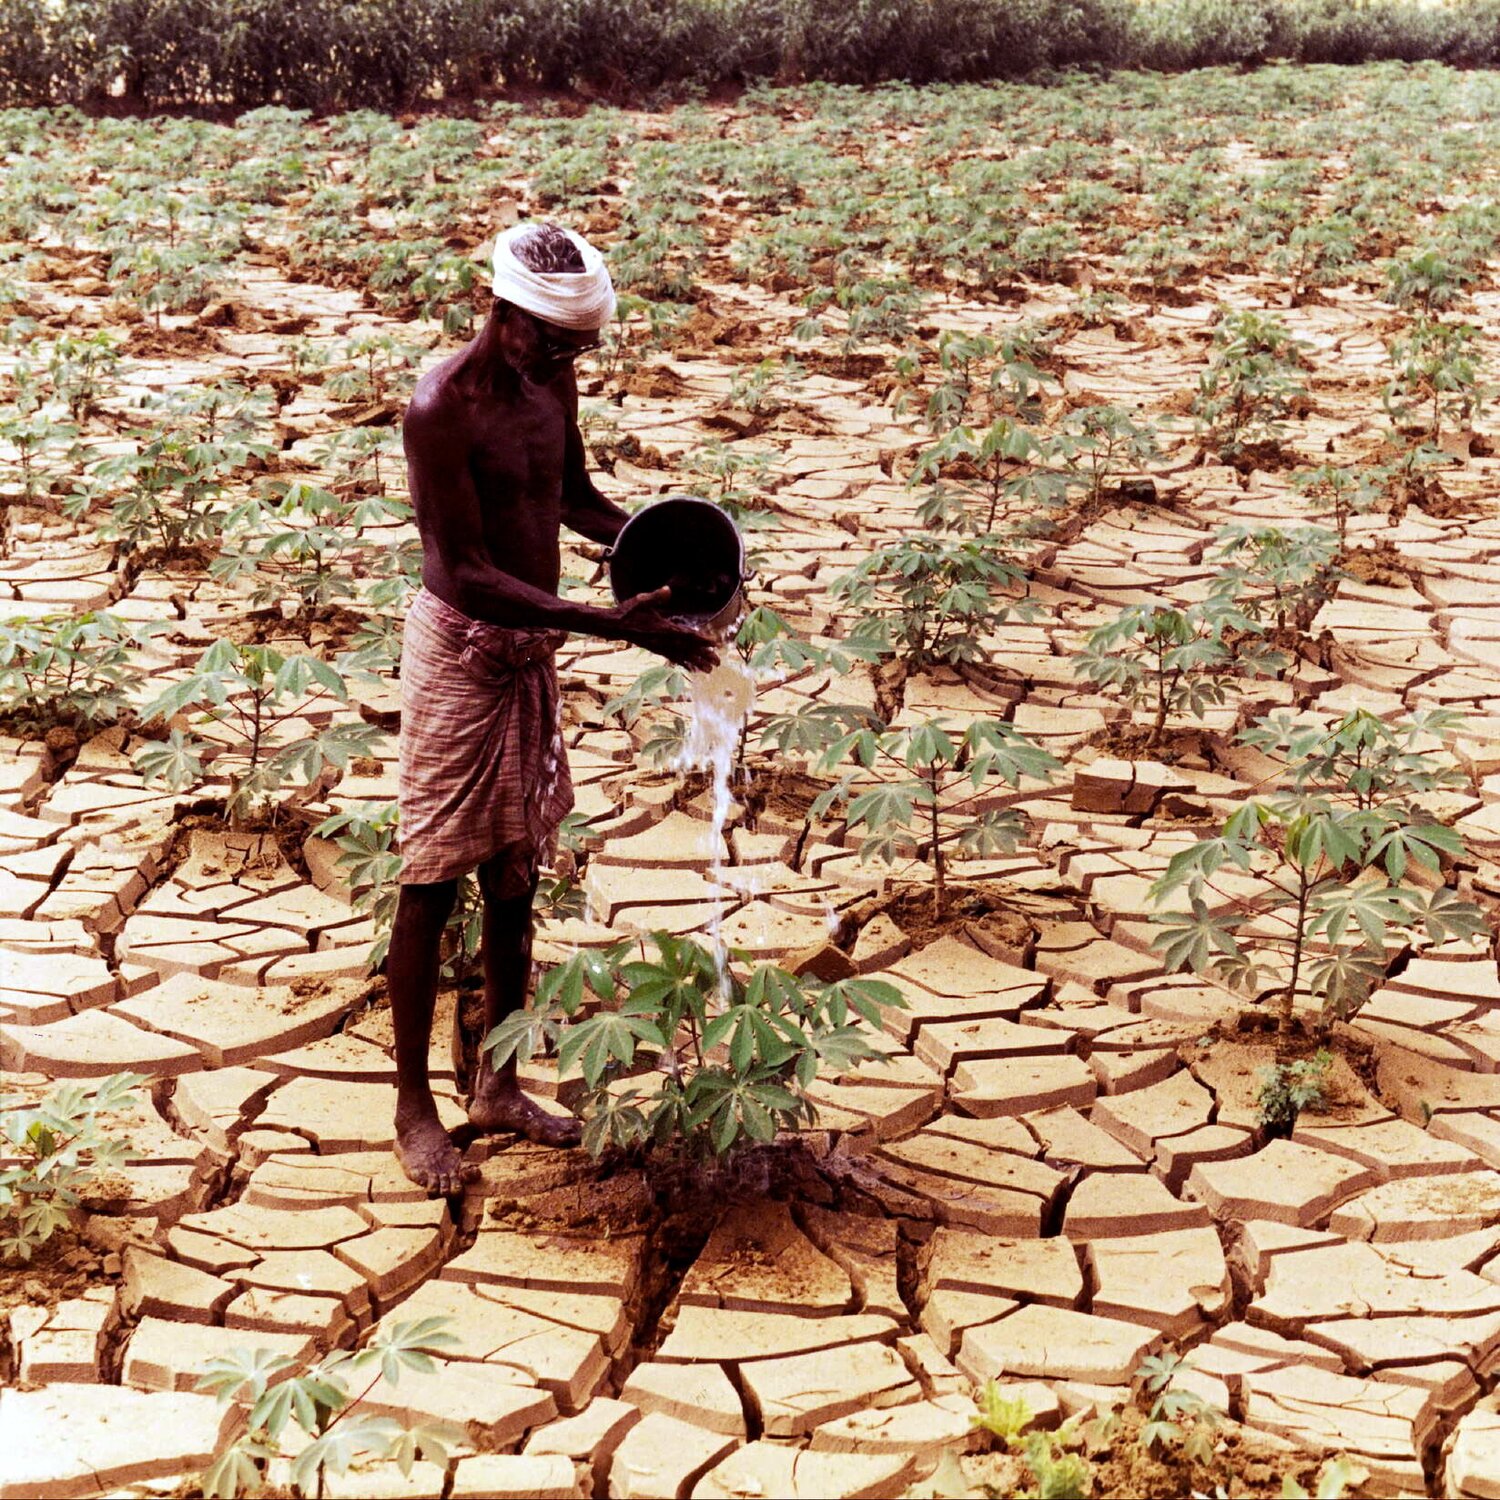 Man watering crops in cracked soil